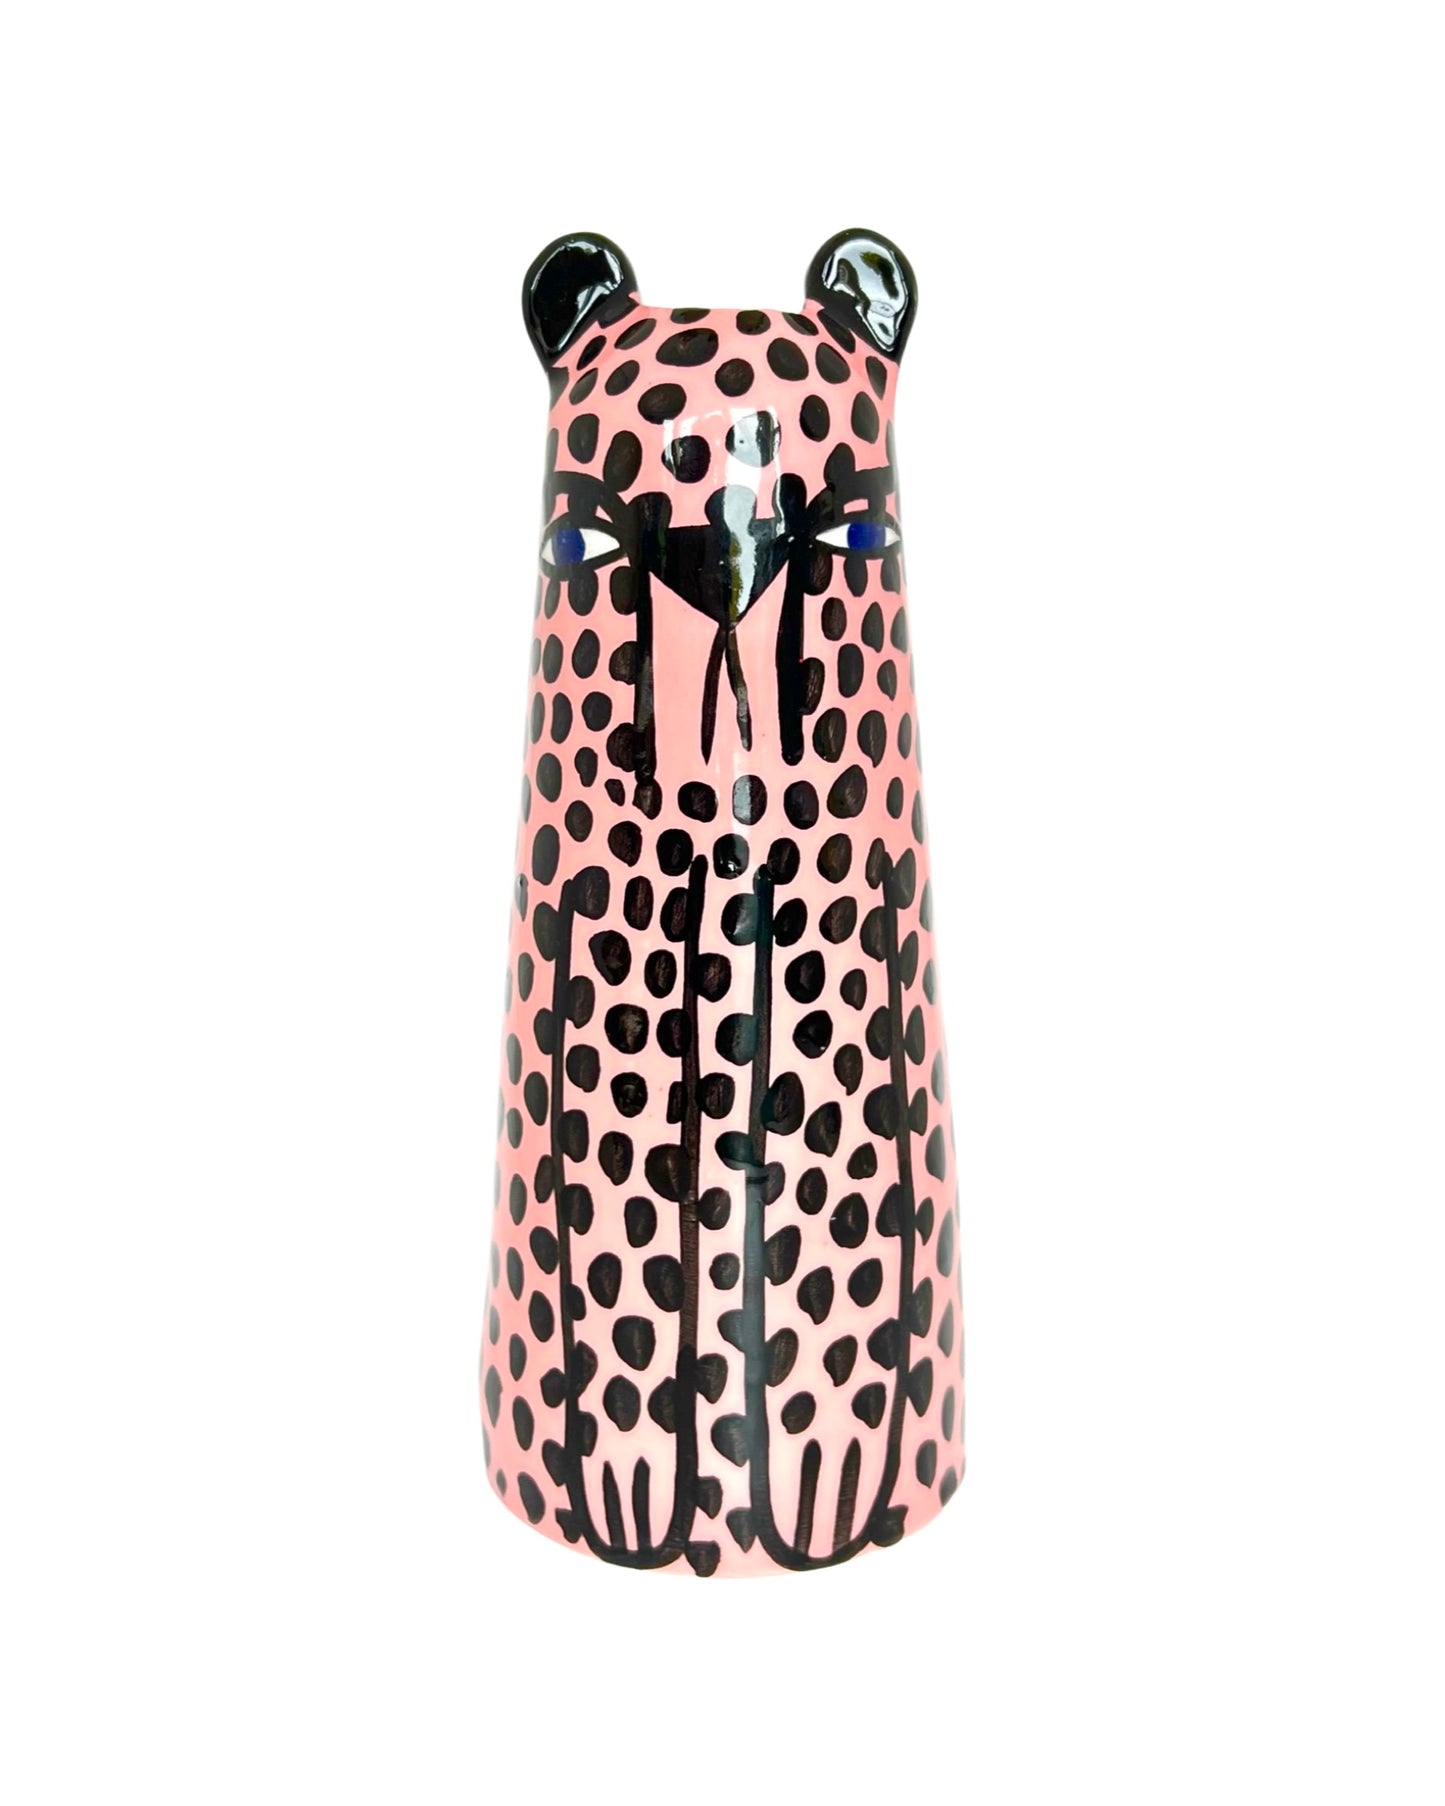 Pink Cheetah Vase by Studio Soph